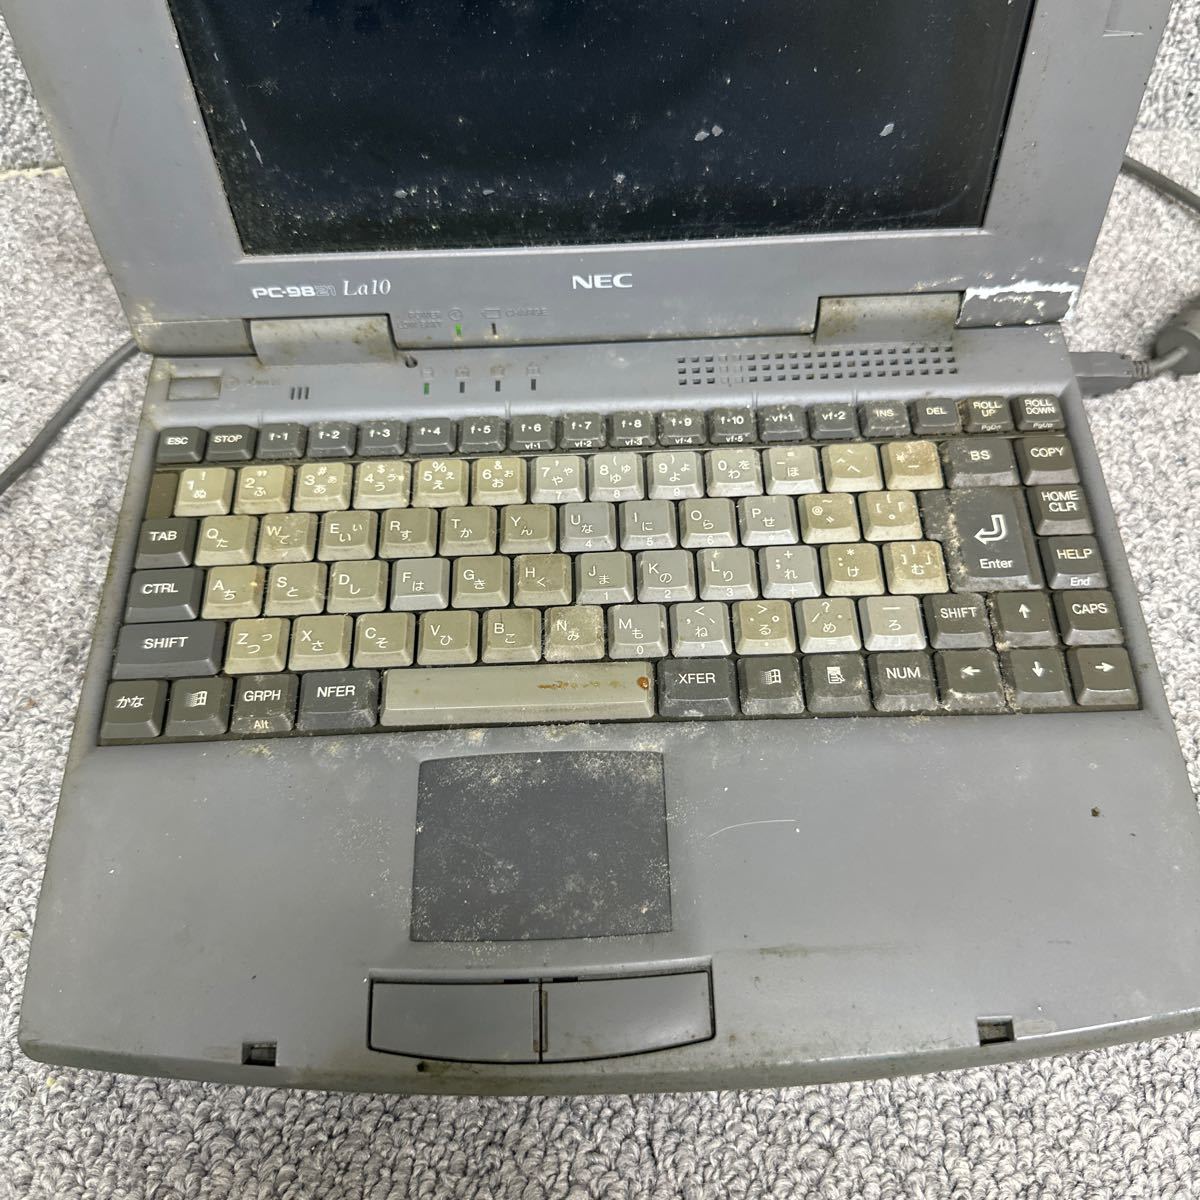 PCN98-1413 супер-скидка PC98 ноутбук NEC PC-9821La10/8 пуск подтверждено Junk включение в покупку возможность 